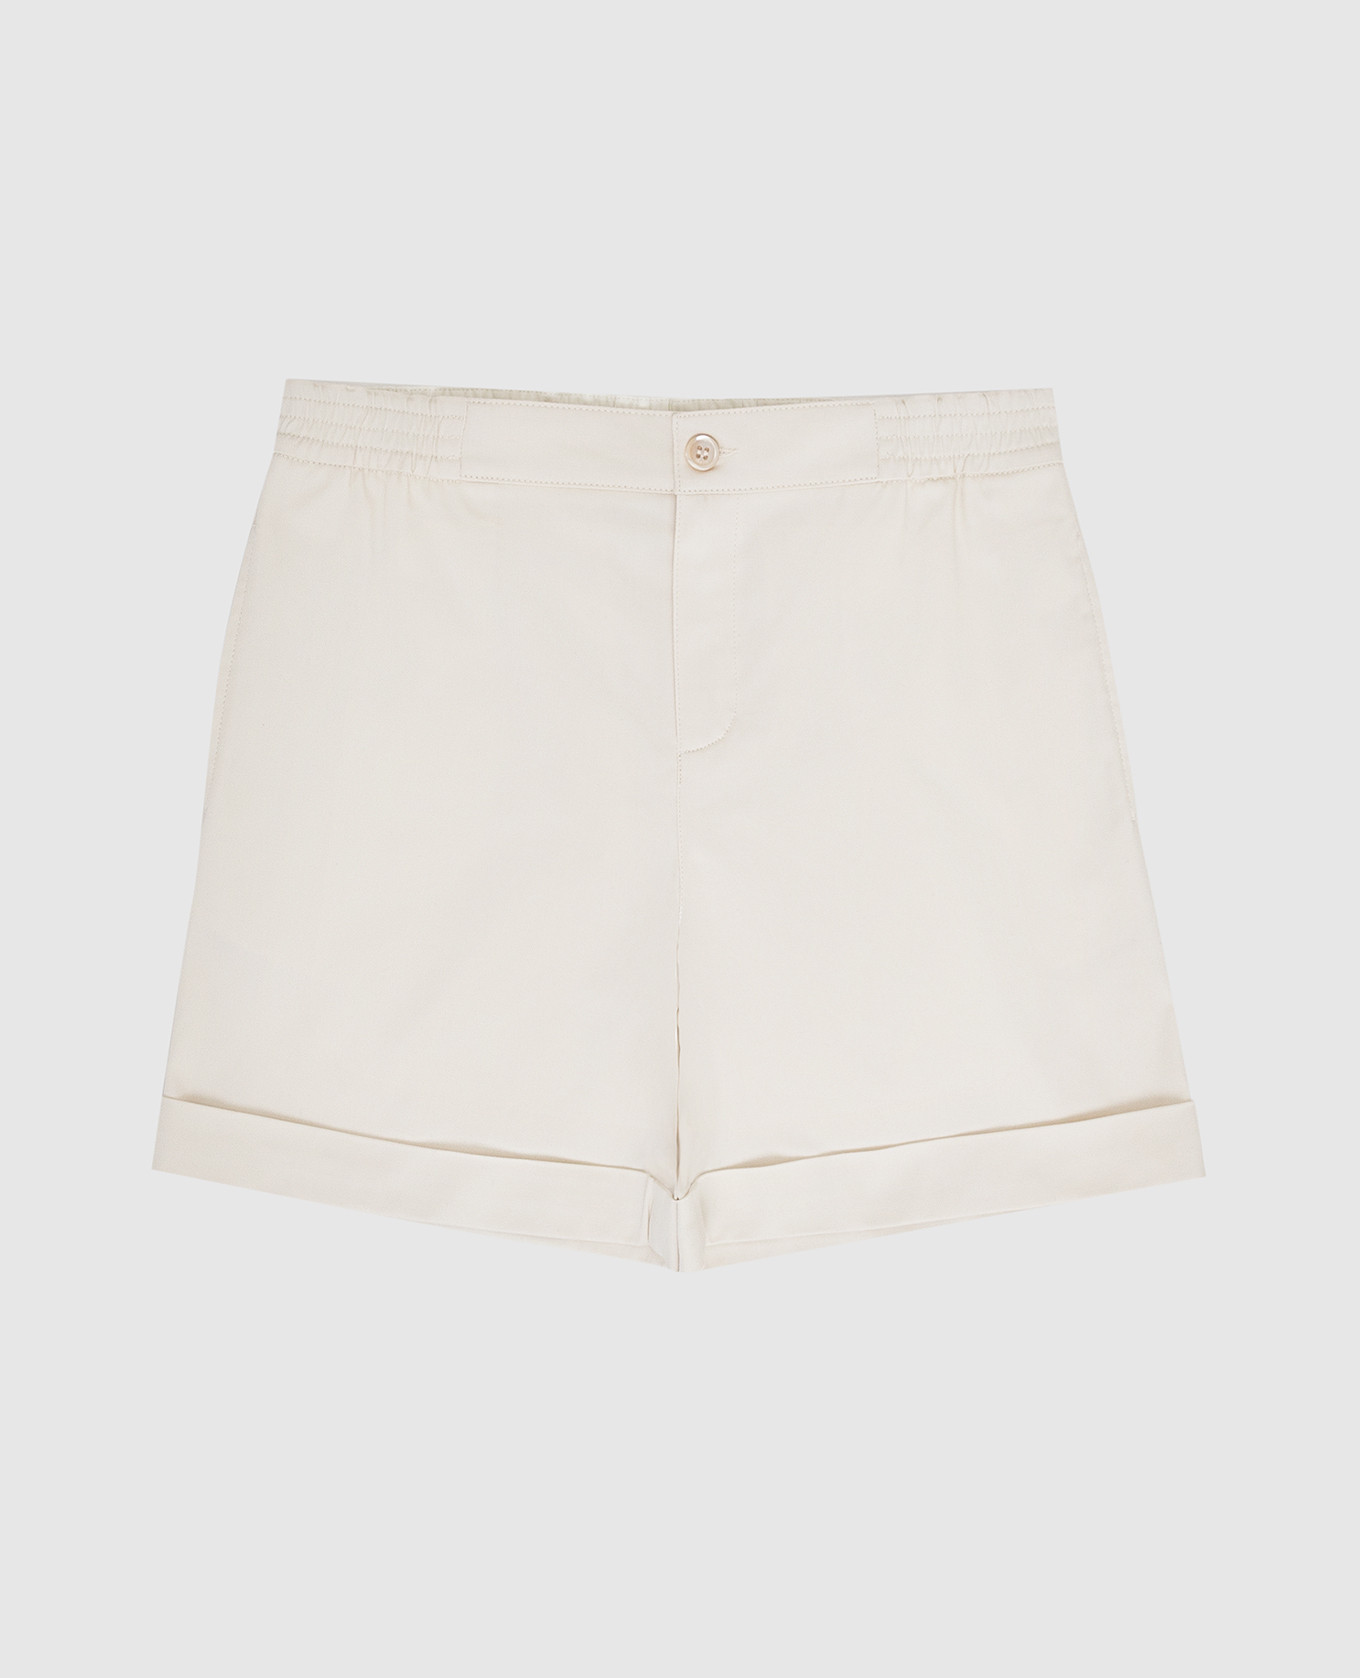 Children's light beige shorts